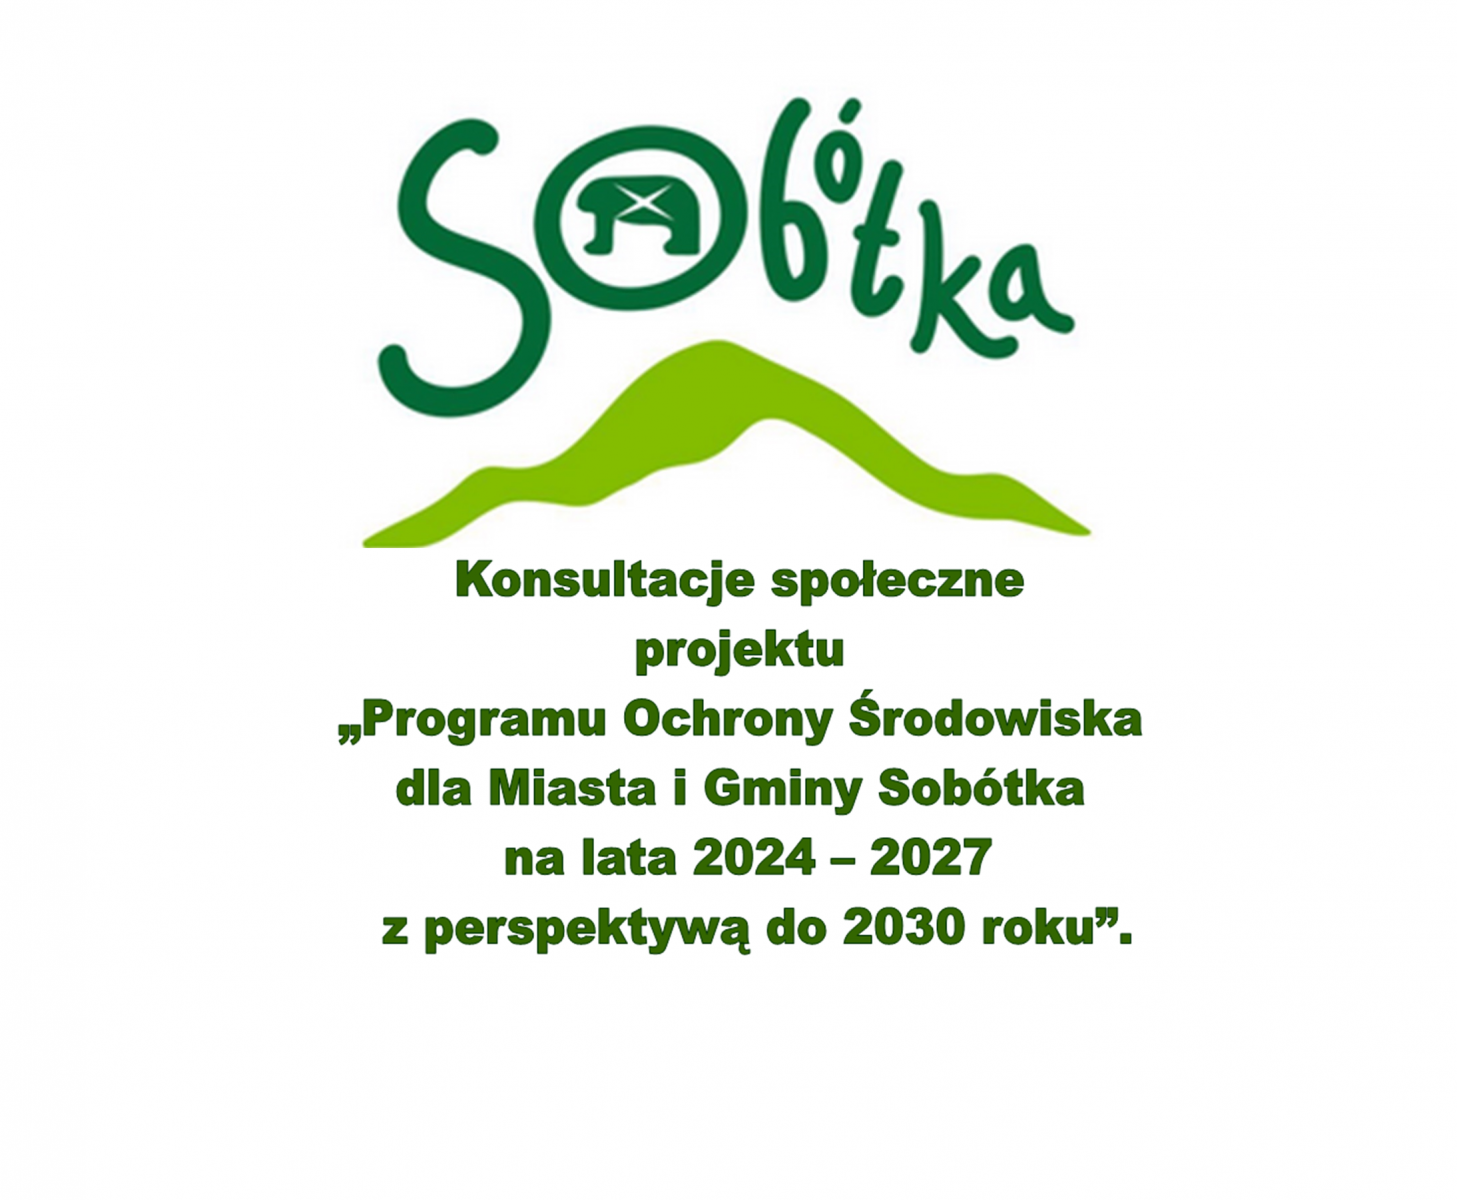 Konsultacje społeczne z mieszkańcami gminy Sobótka w sprawie projektu „Programu Ochrony Środowiska dla Miasta i Gminy Sobótka na lata 2024 – 2027 z perspektywą do 2030 roku”.